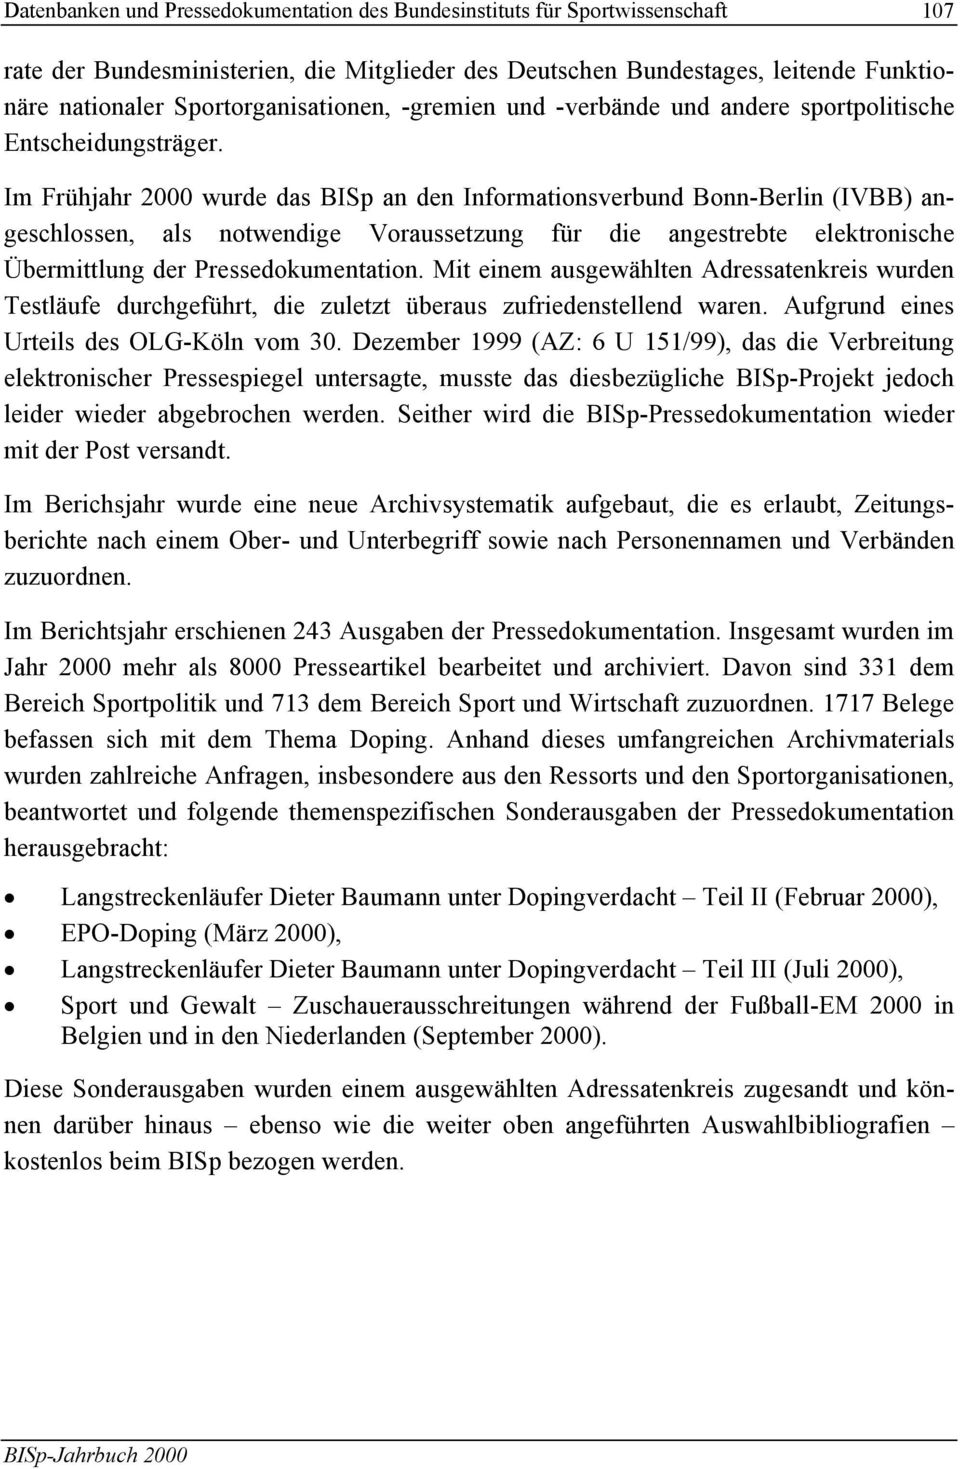 Im Frühjahr 2000 wurde das BISp an den Informationsverbund Bonn-Berlin (IVBB) angeschlossen, als notwendige Voraussetzung für die angestrebte elektronische Übermittlung der Pressedokumentation.